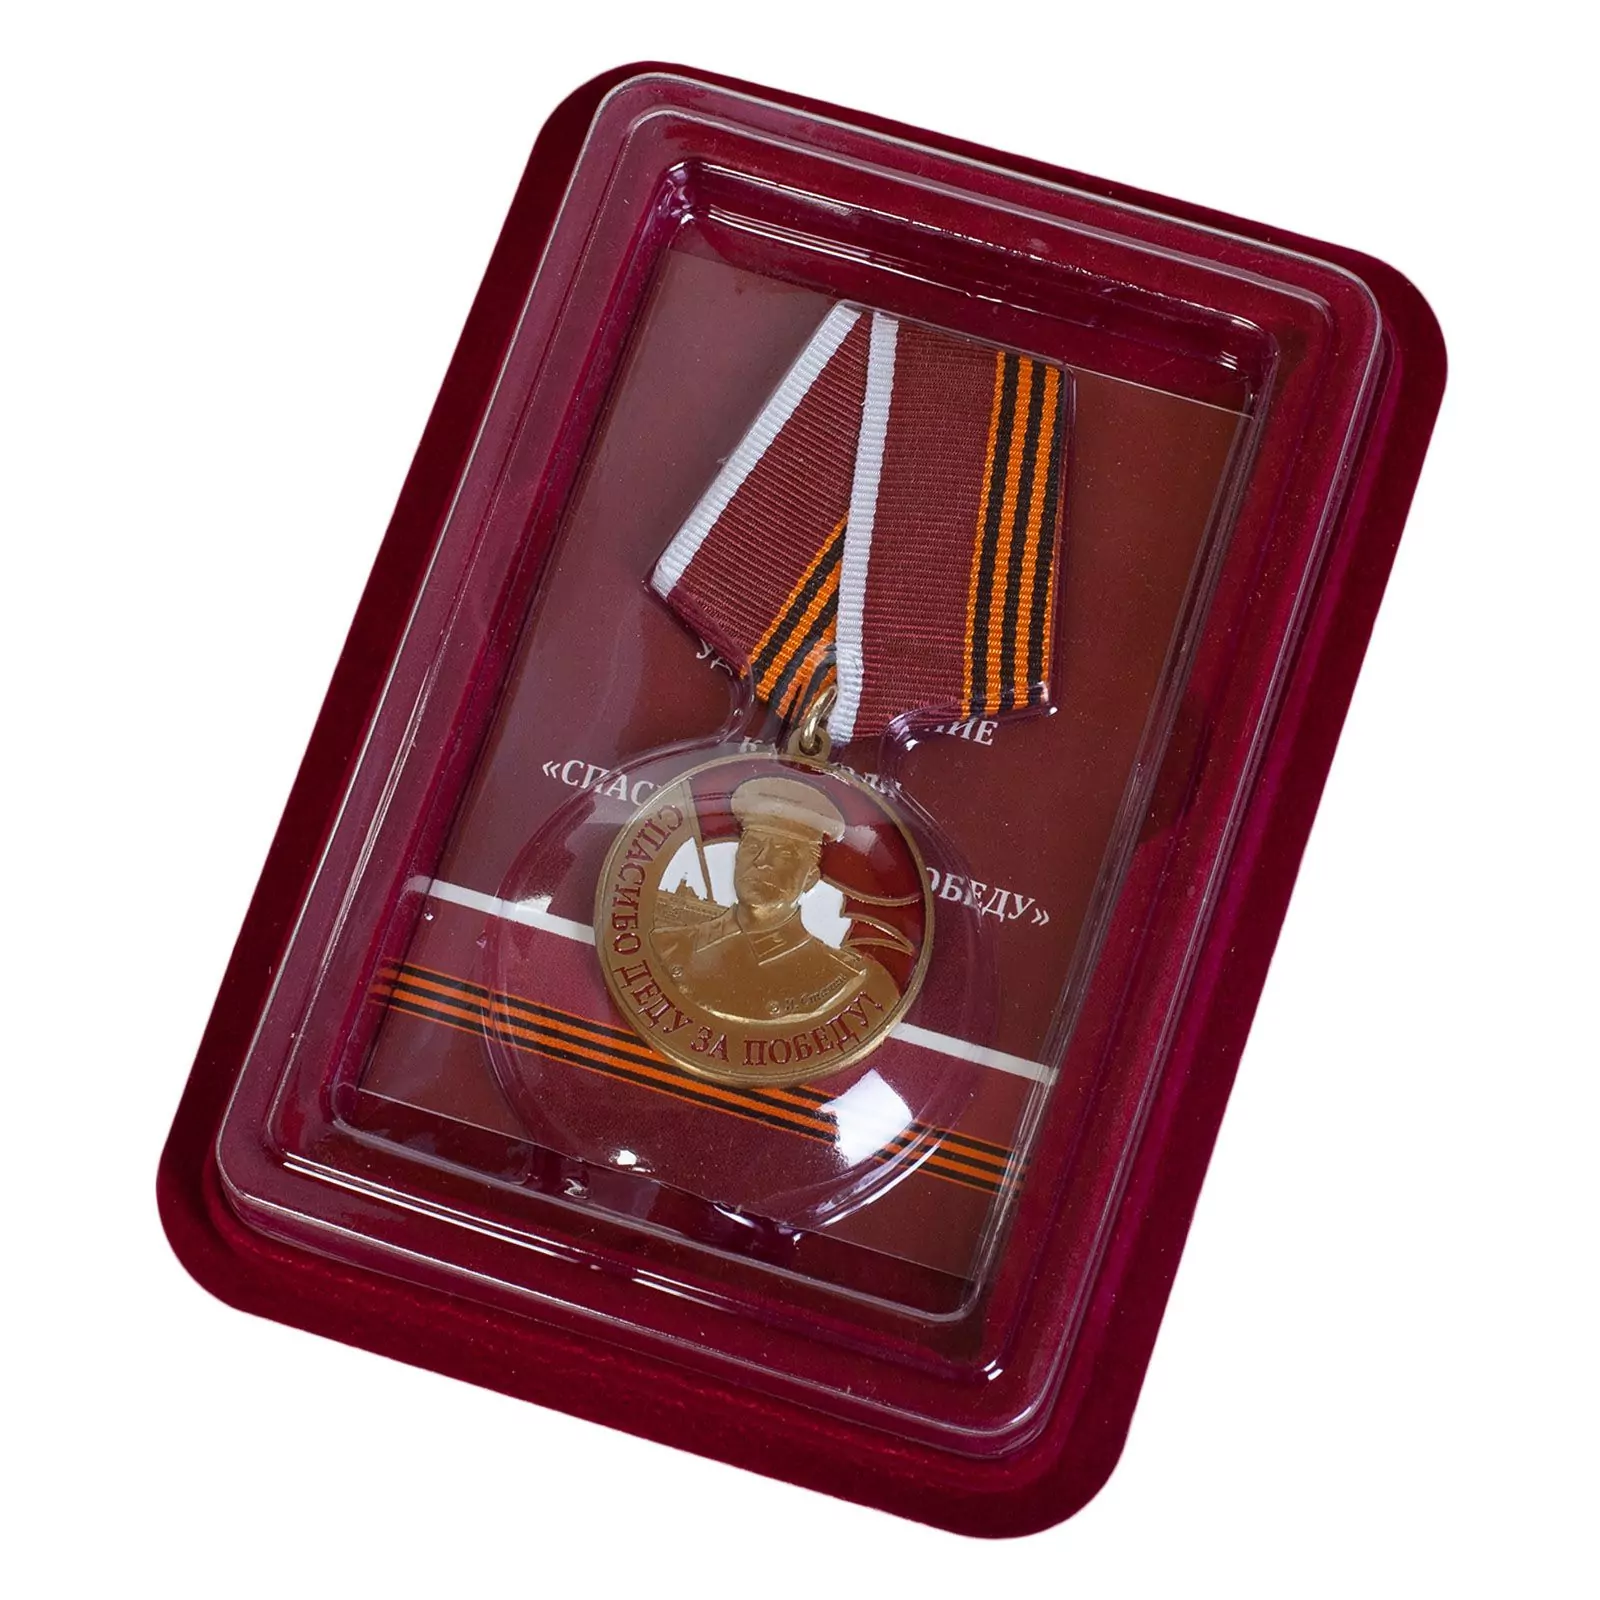 Памятная медаль со Сталиным "Спасибо деду за Победу" в футляре из флока